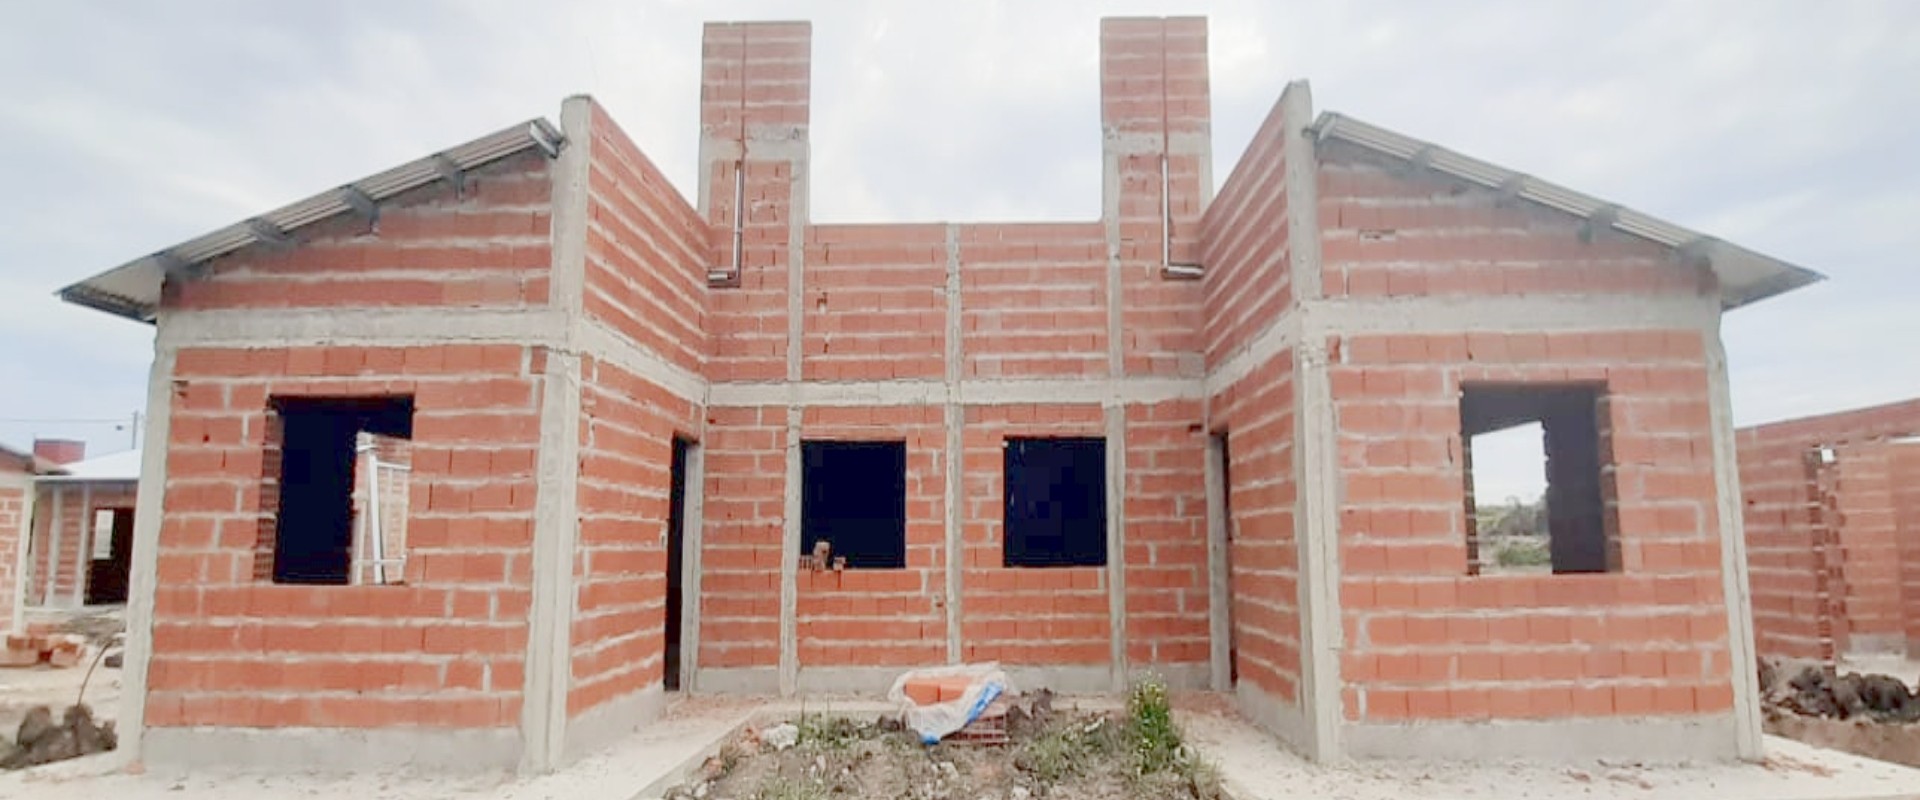 El IAPV licitará la terminación de 30 viviendas pertenecientes a Vicoer en Paraná